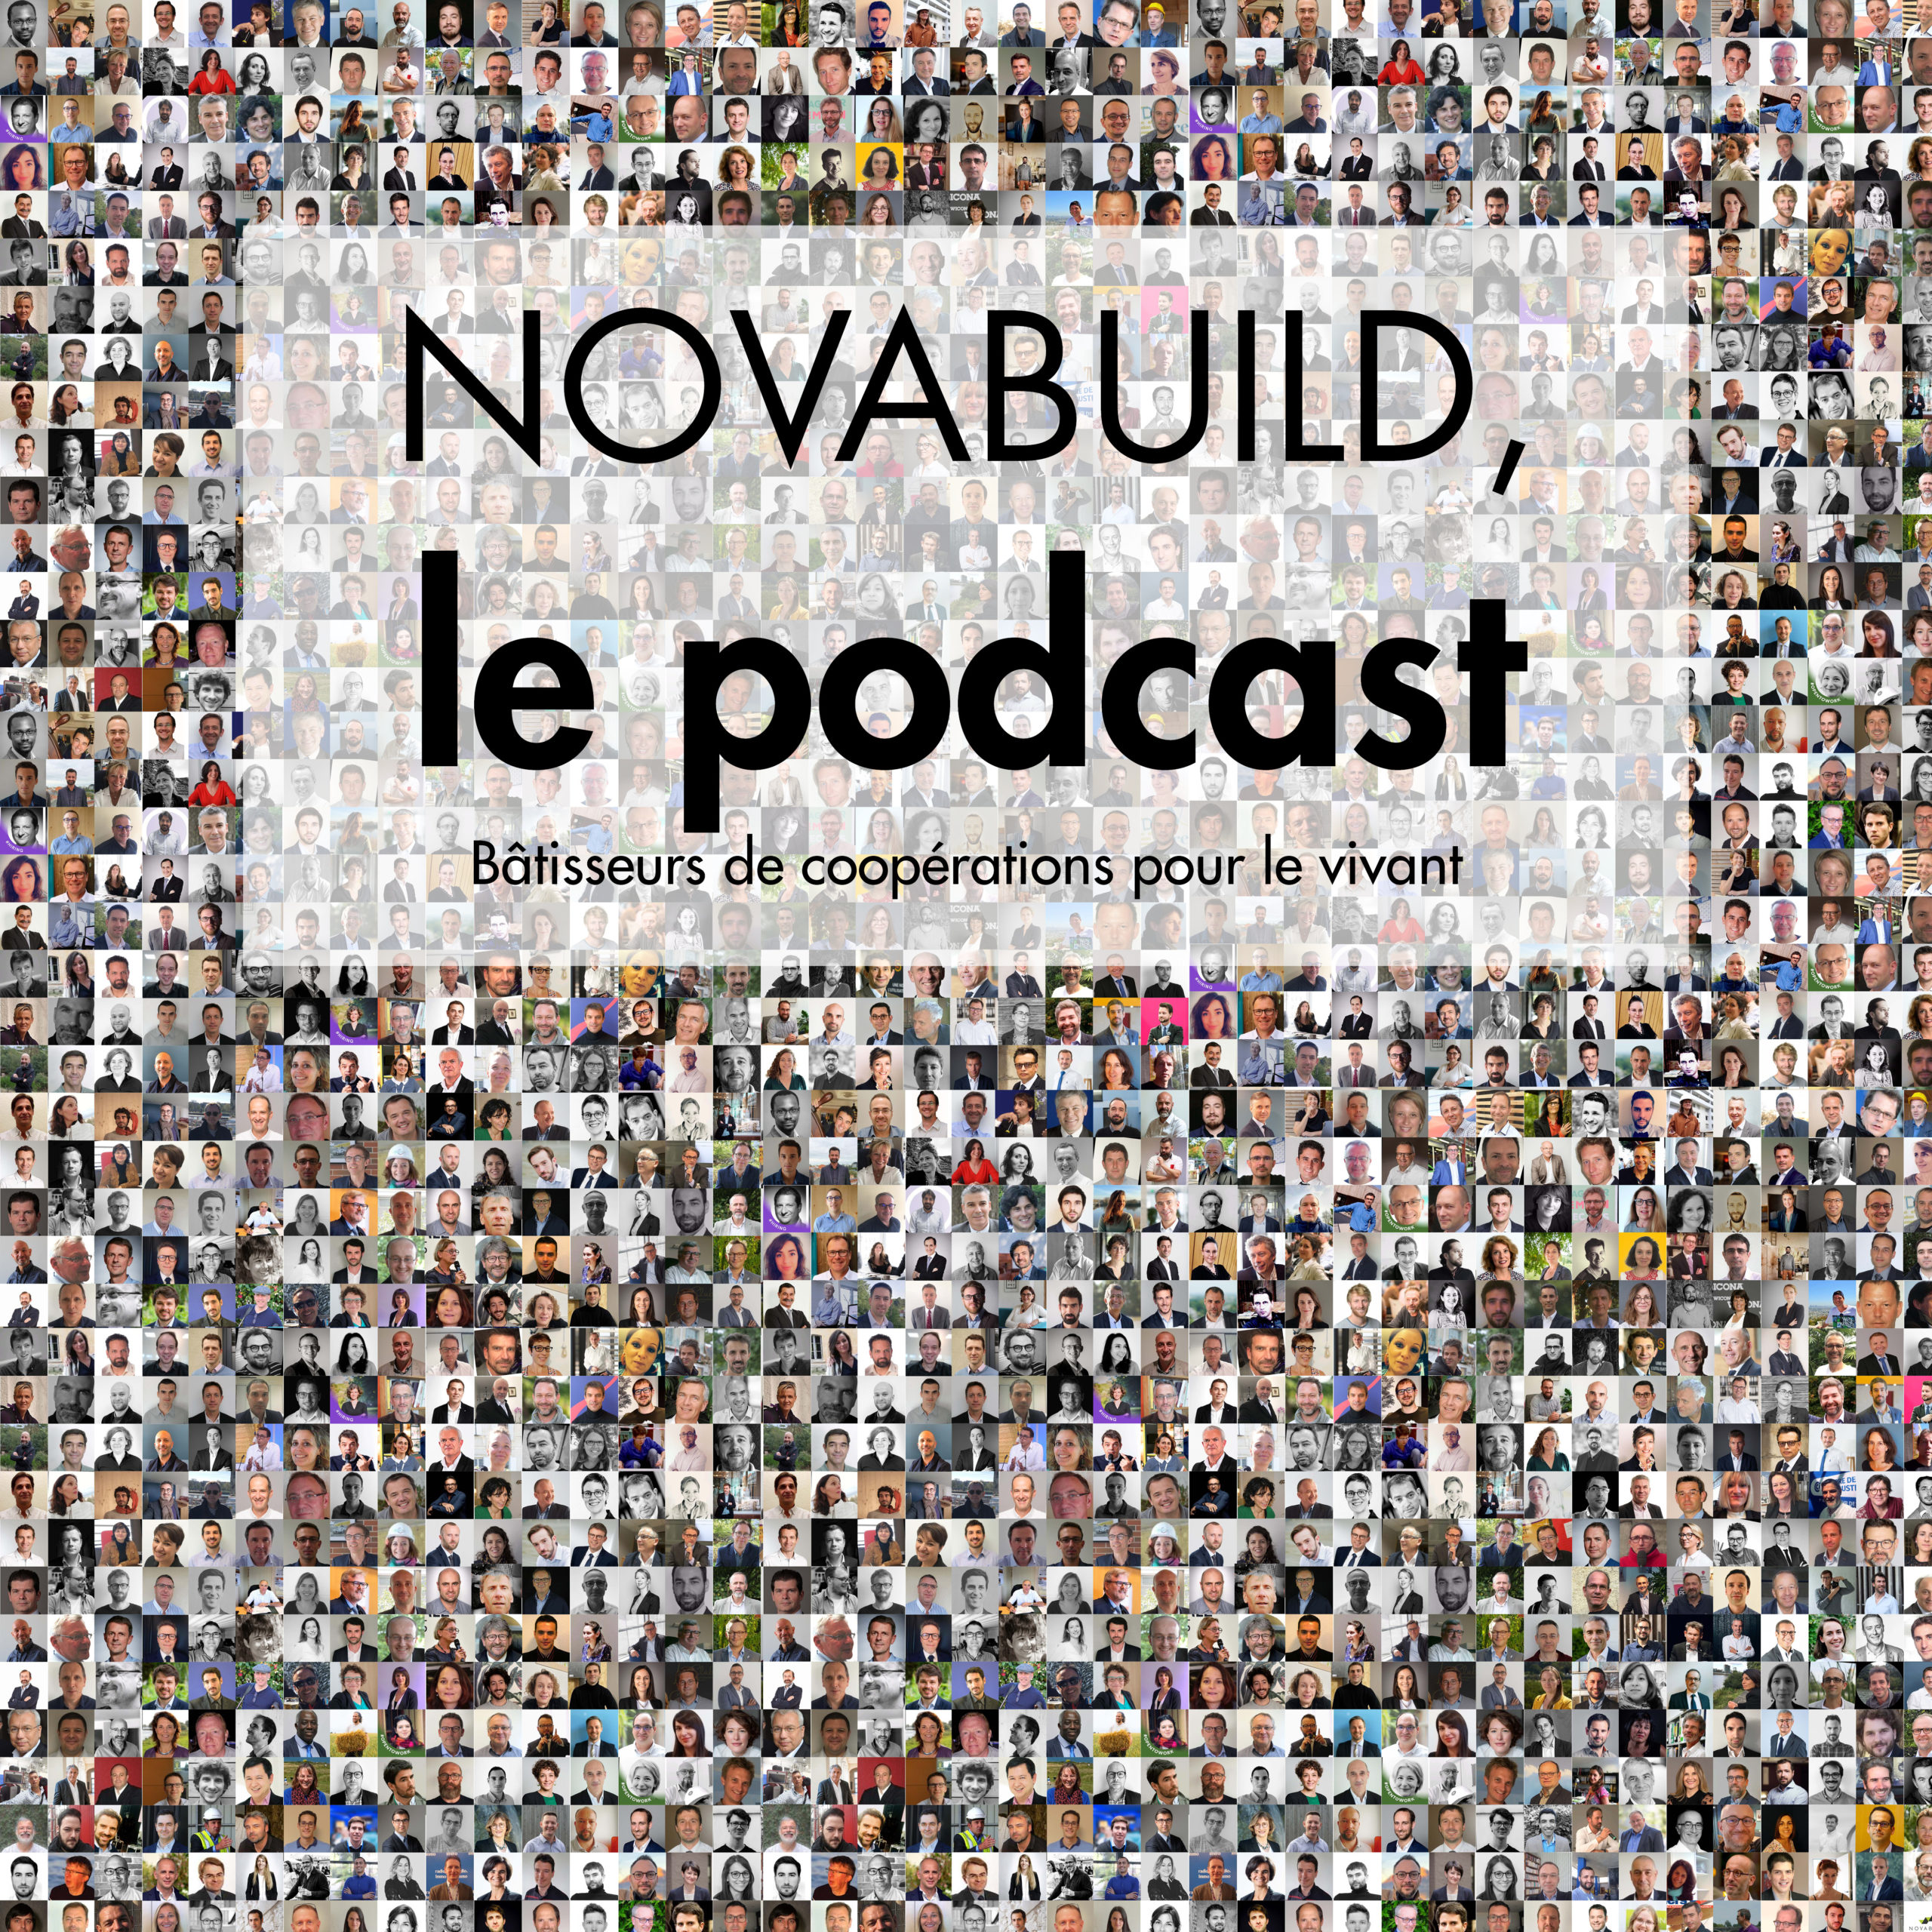 (c) Novabuild.fr